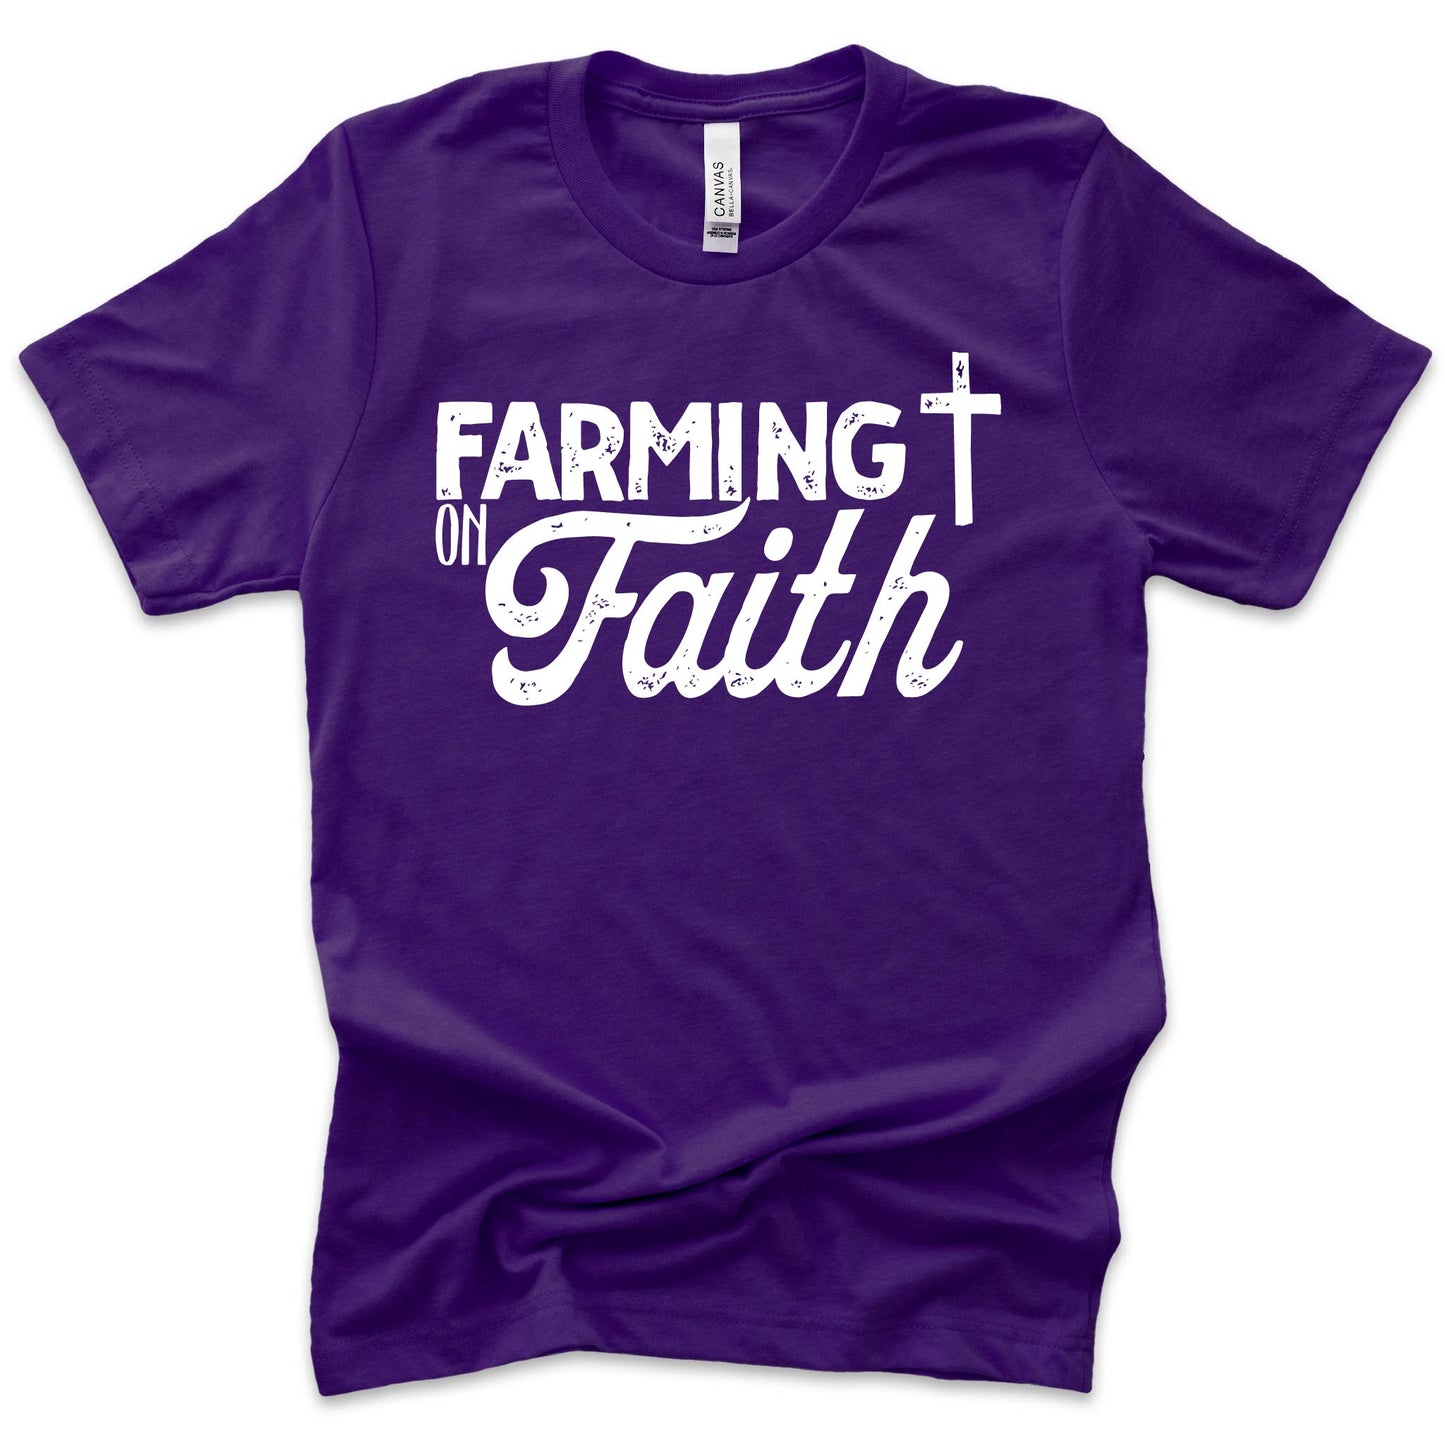 Farming On Faith